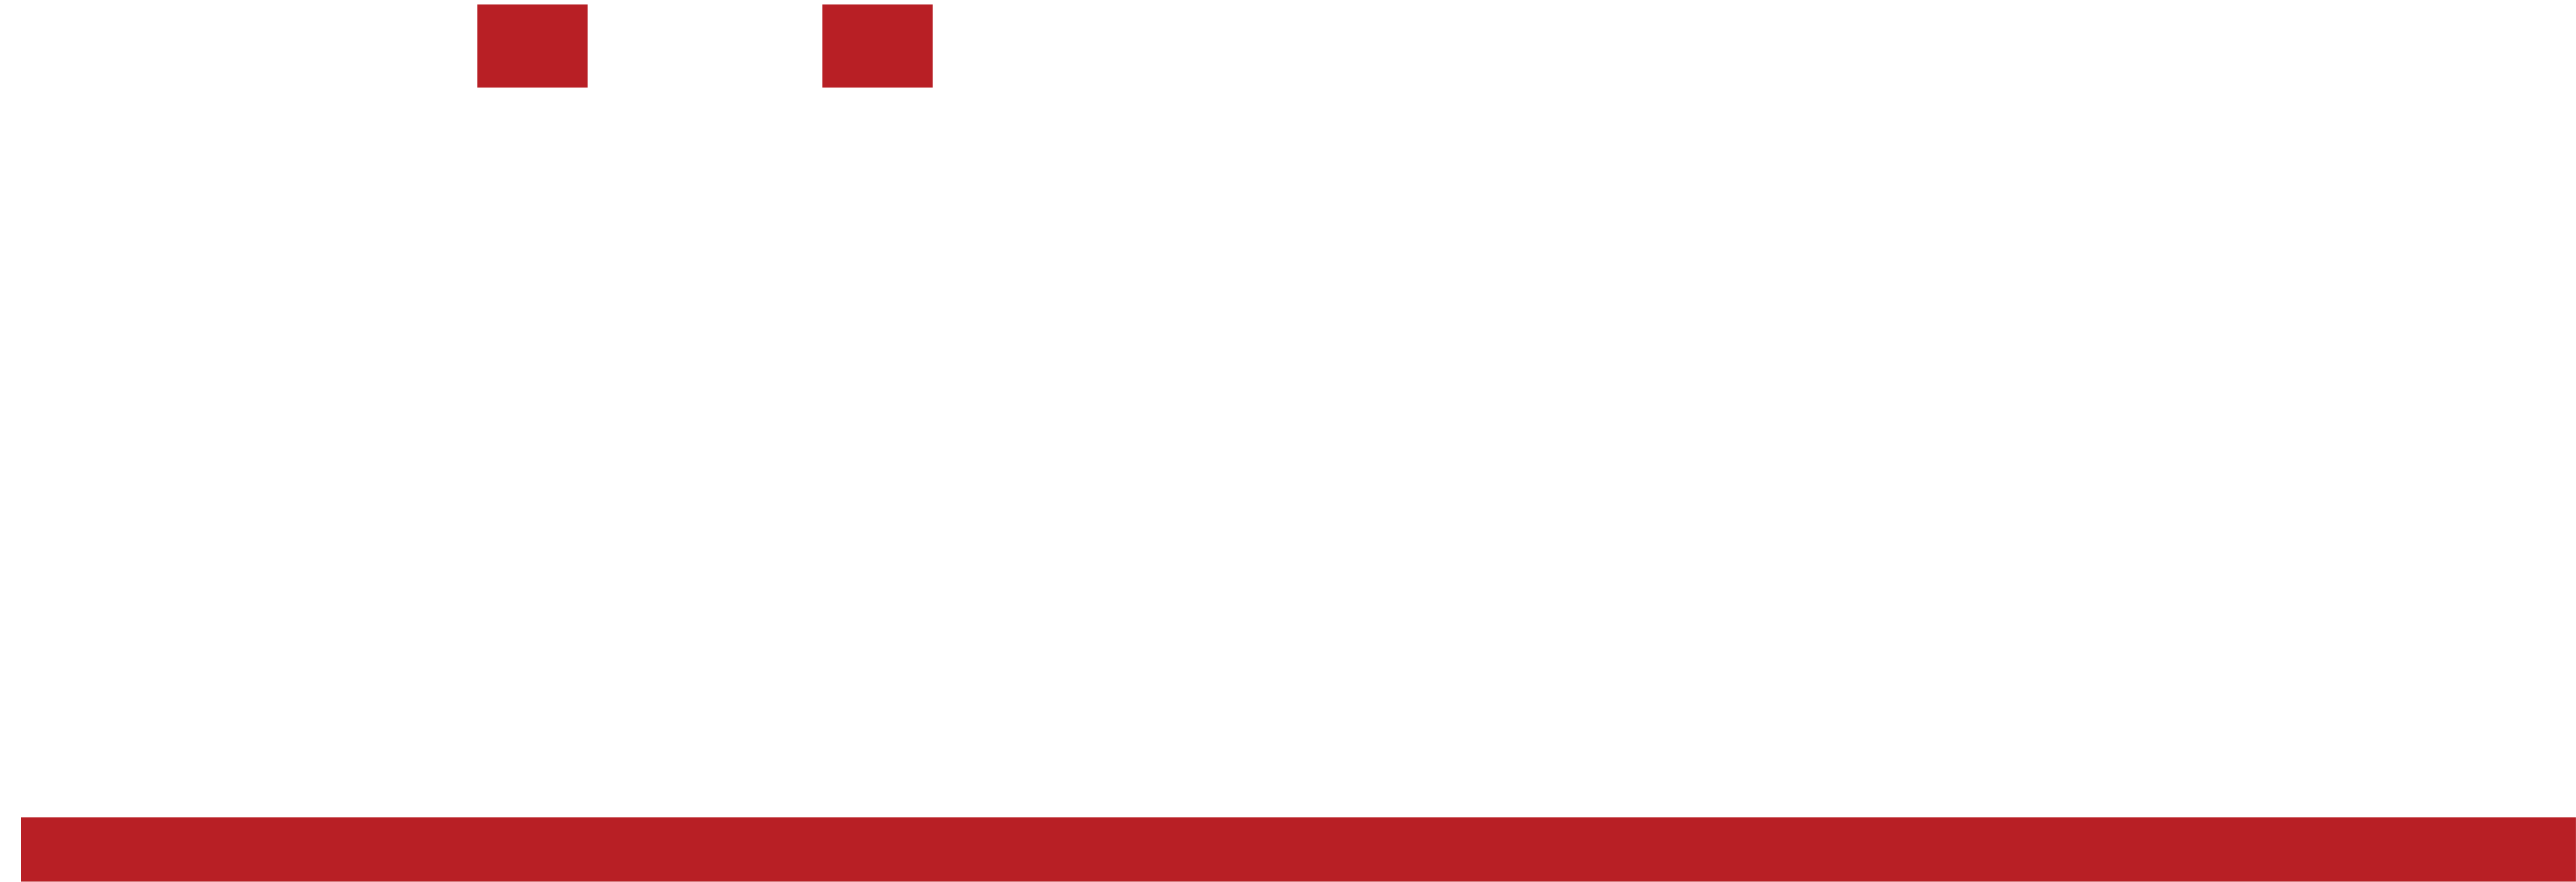 Silicom logo large for dark backgrounds (transparent PNG)